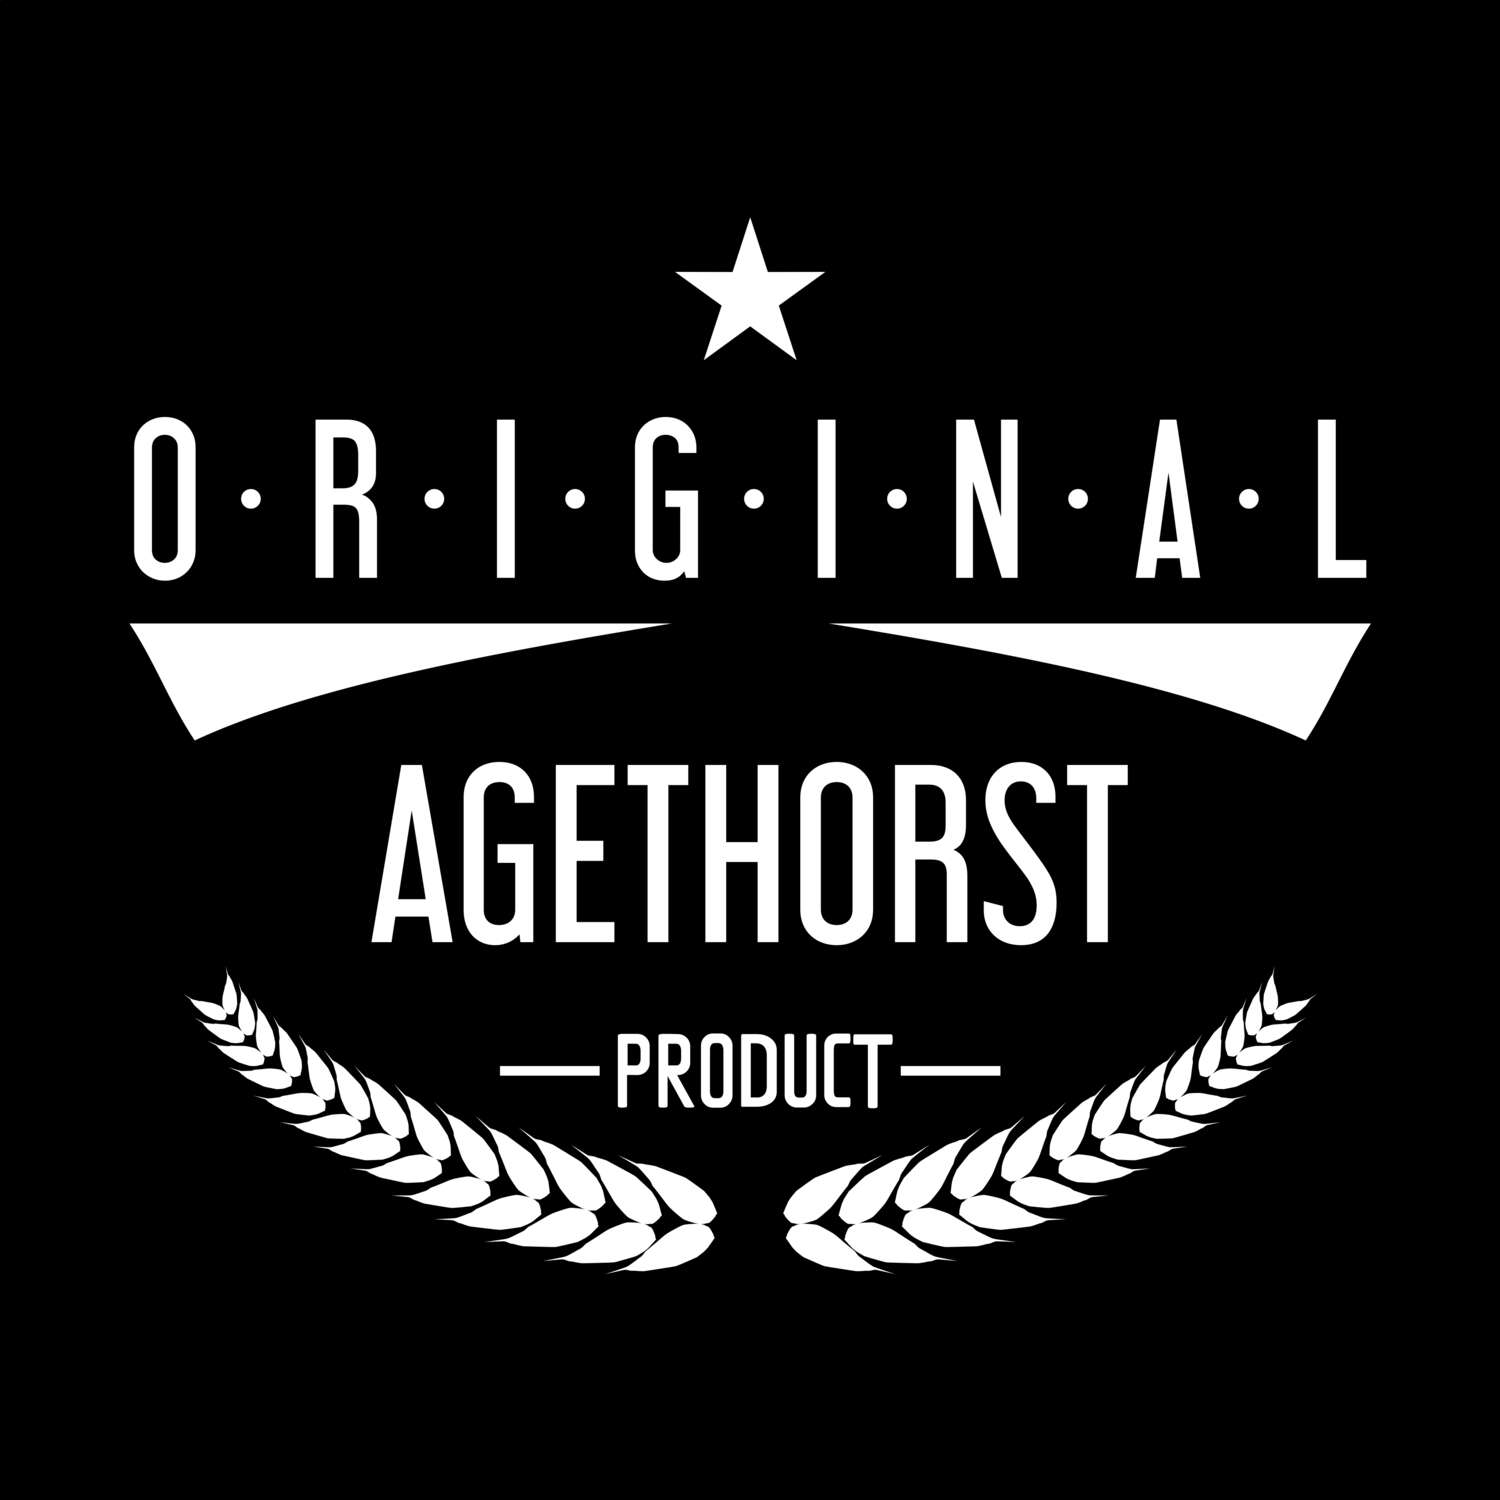 Agethorst T-Shirt »Original Product«